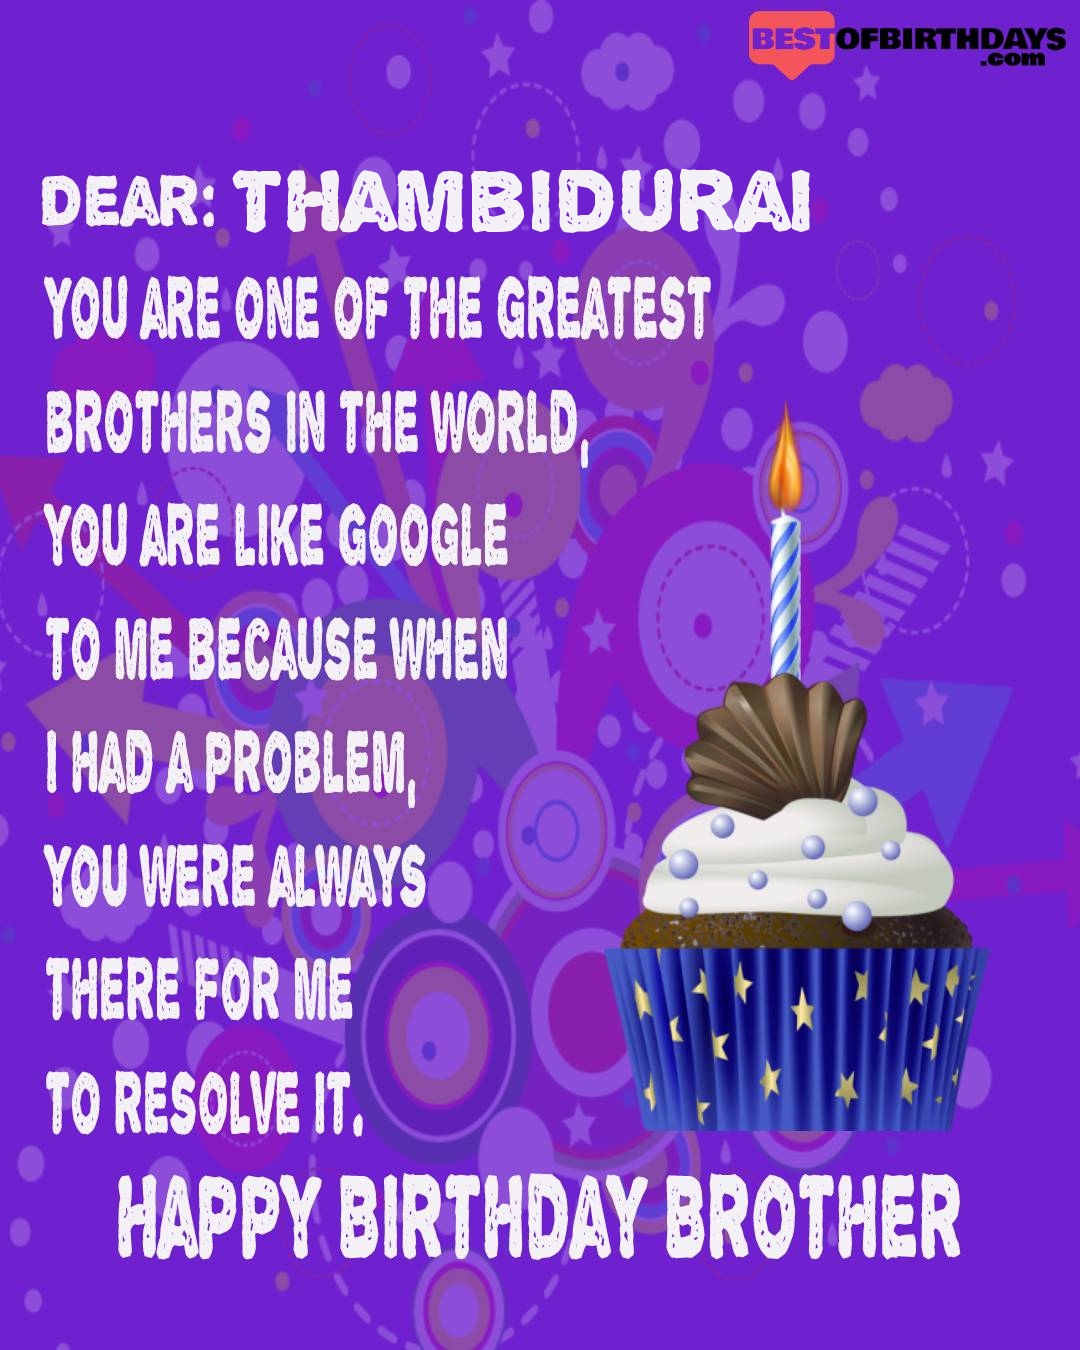 Happy birthday thambidurai bhai brother bro